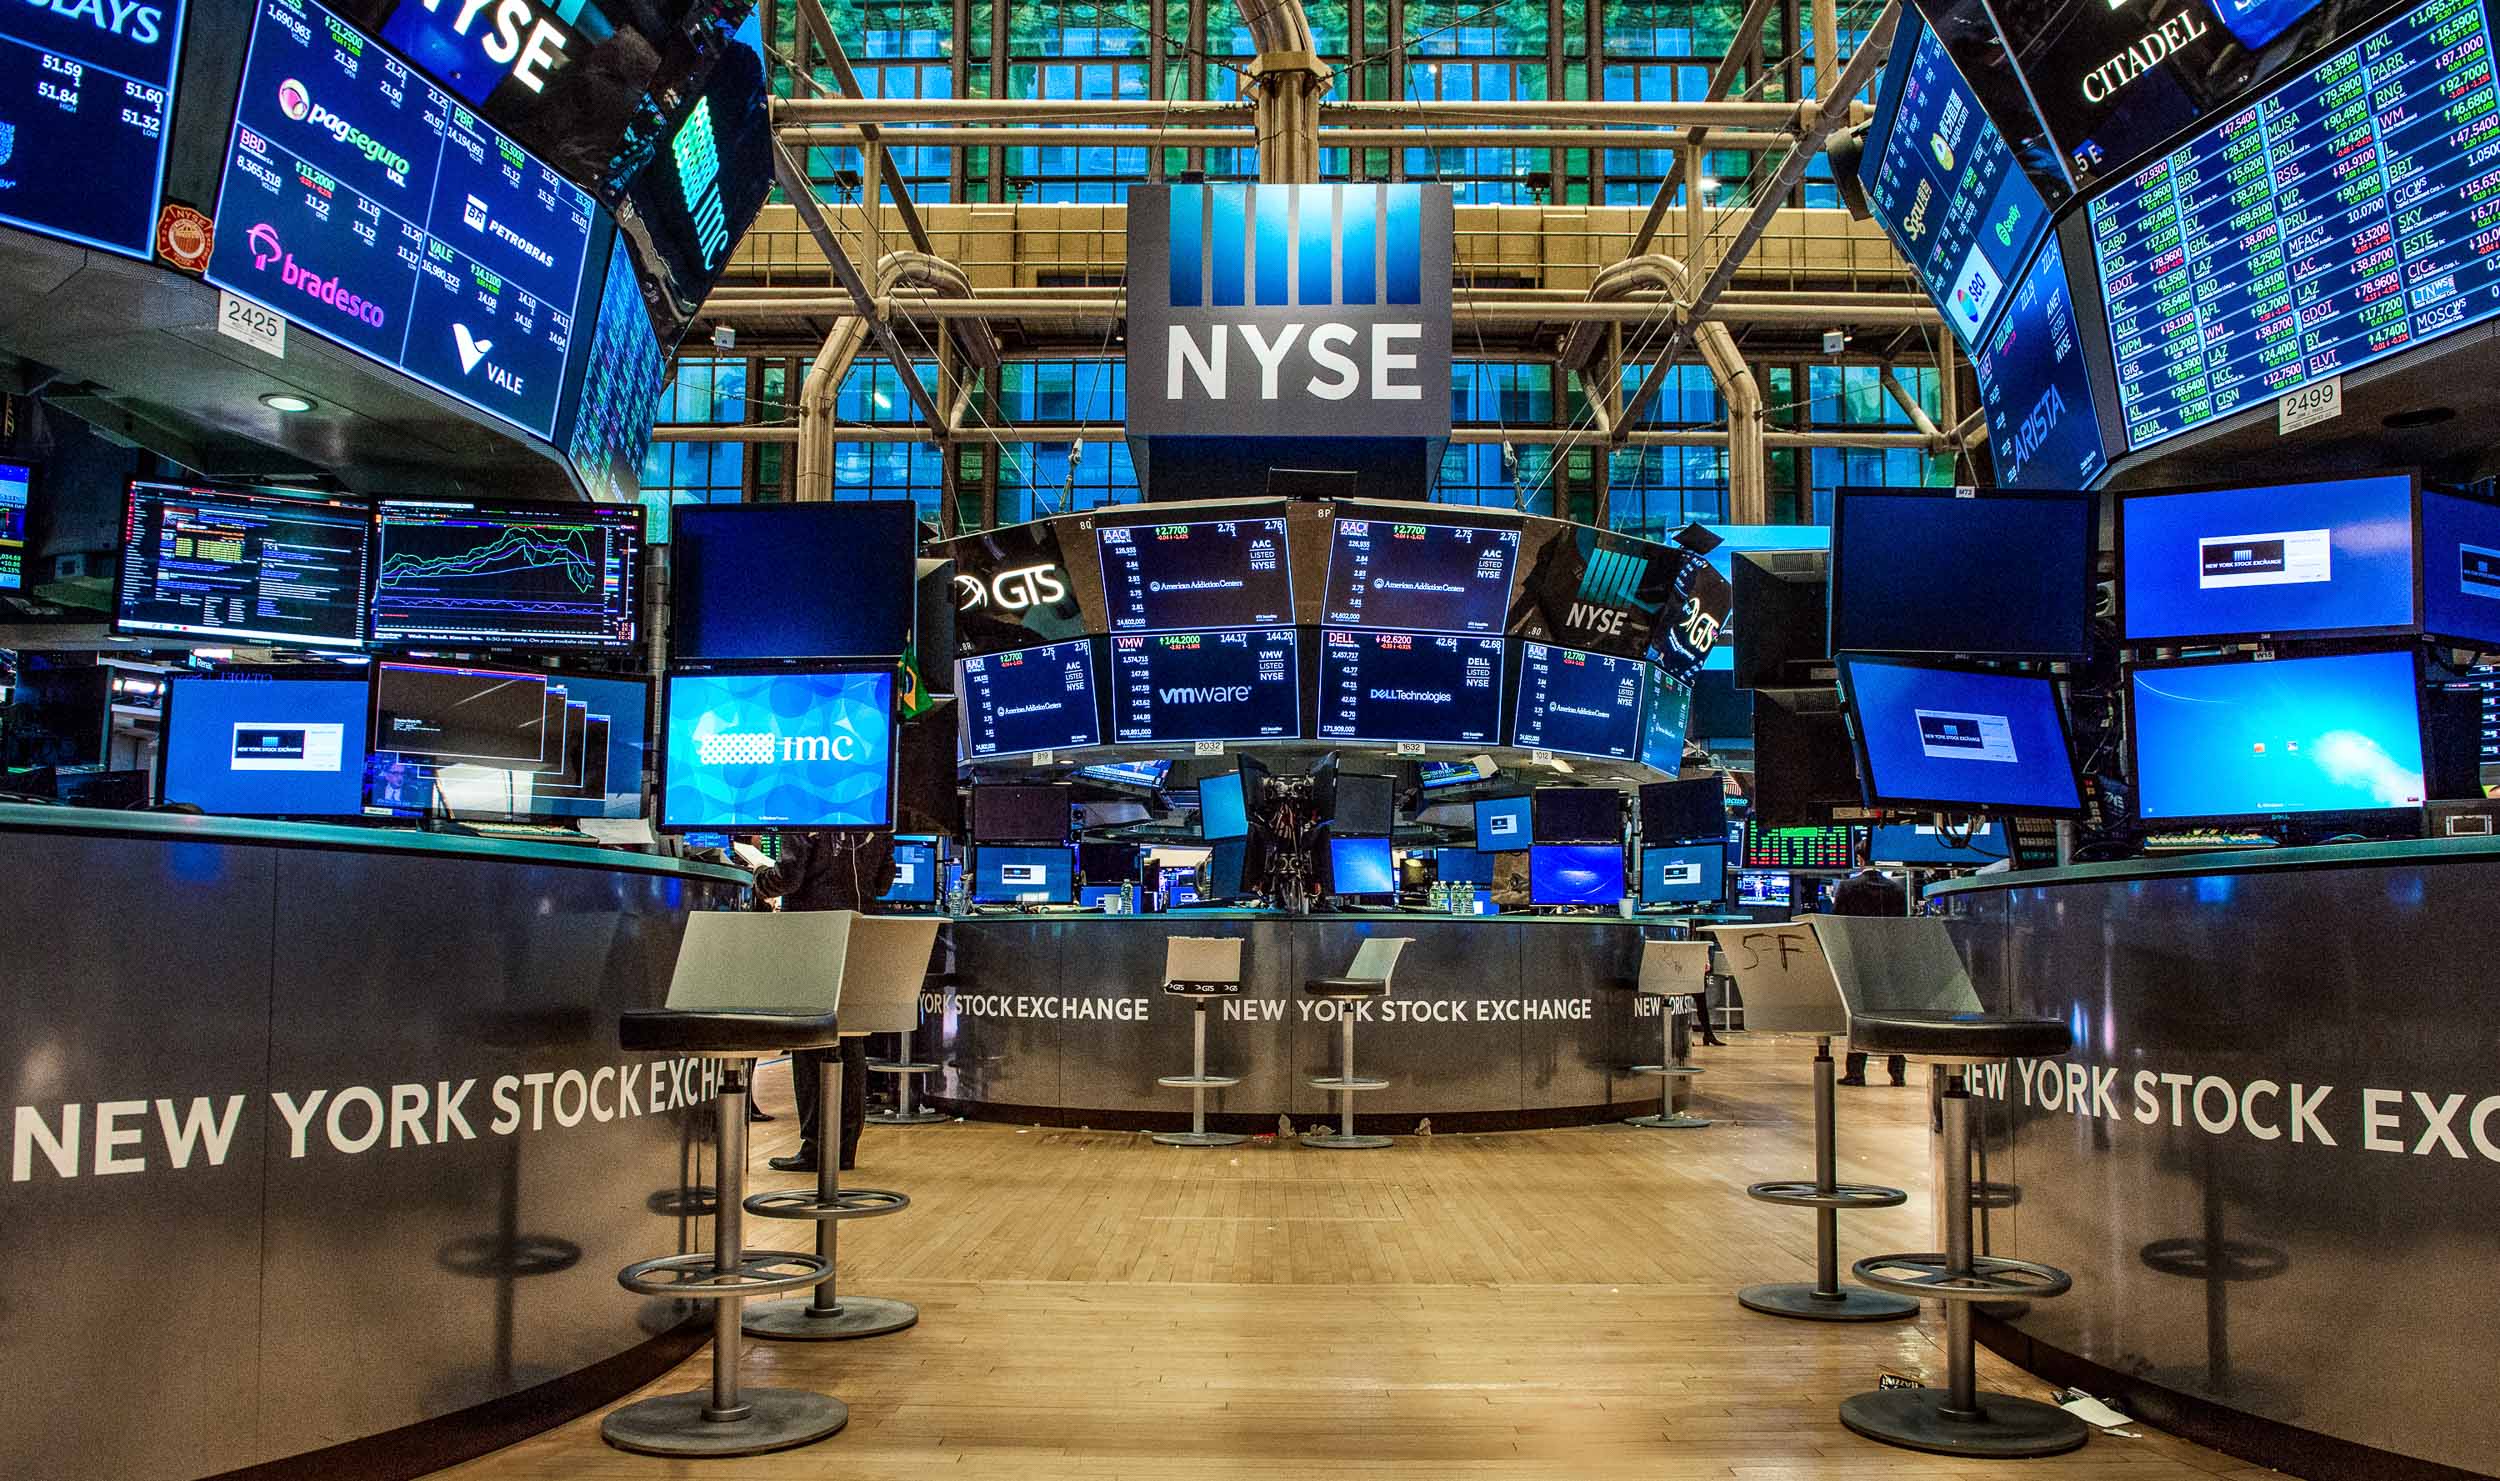 NYSE / New York Stock Exchange